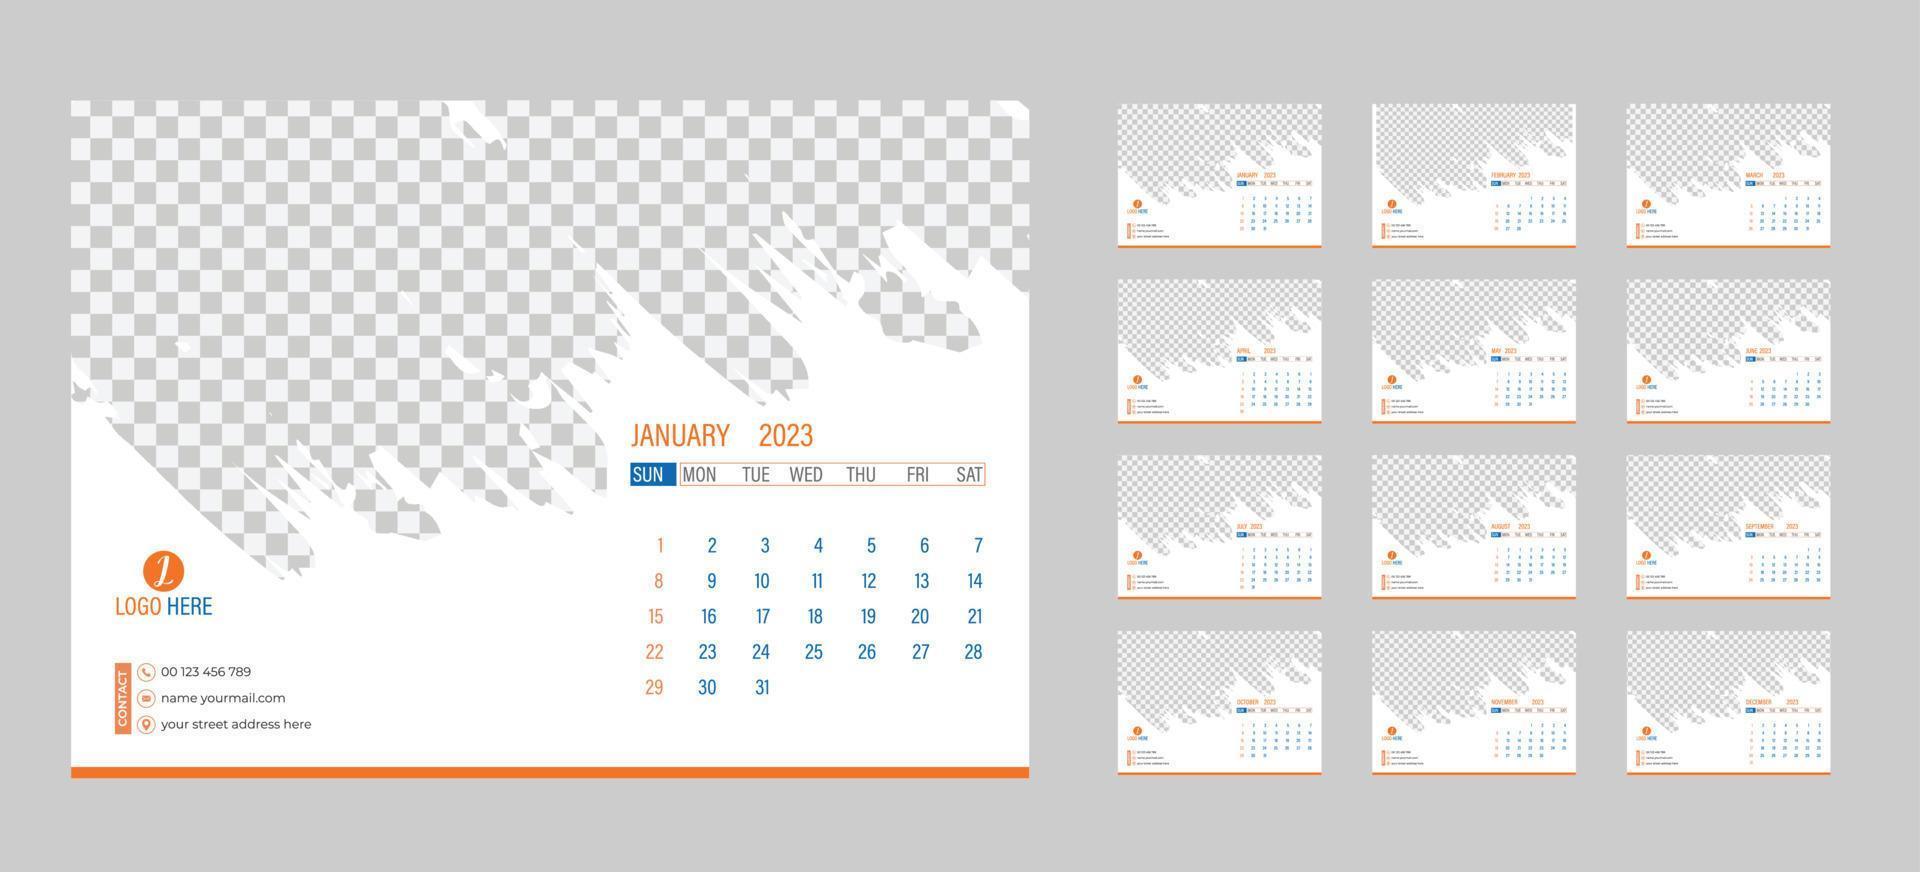 calendário de fotos mensais de desktop 2023 layout de calendário de fotos horizontal mensal simples para 2023 anos em inglês. capa de calendário e modelos de 12 meses. semana começa a partir de segunda-feira. ilustração vetorial vetor